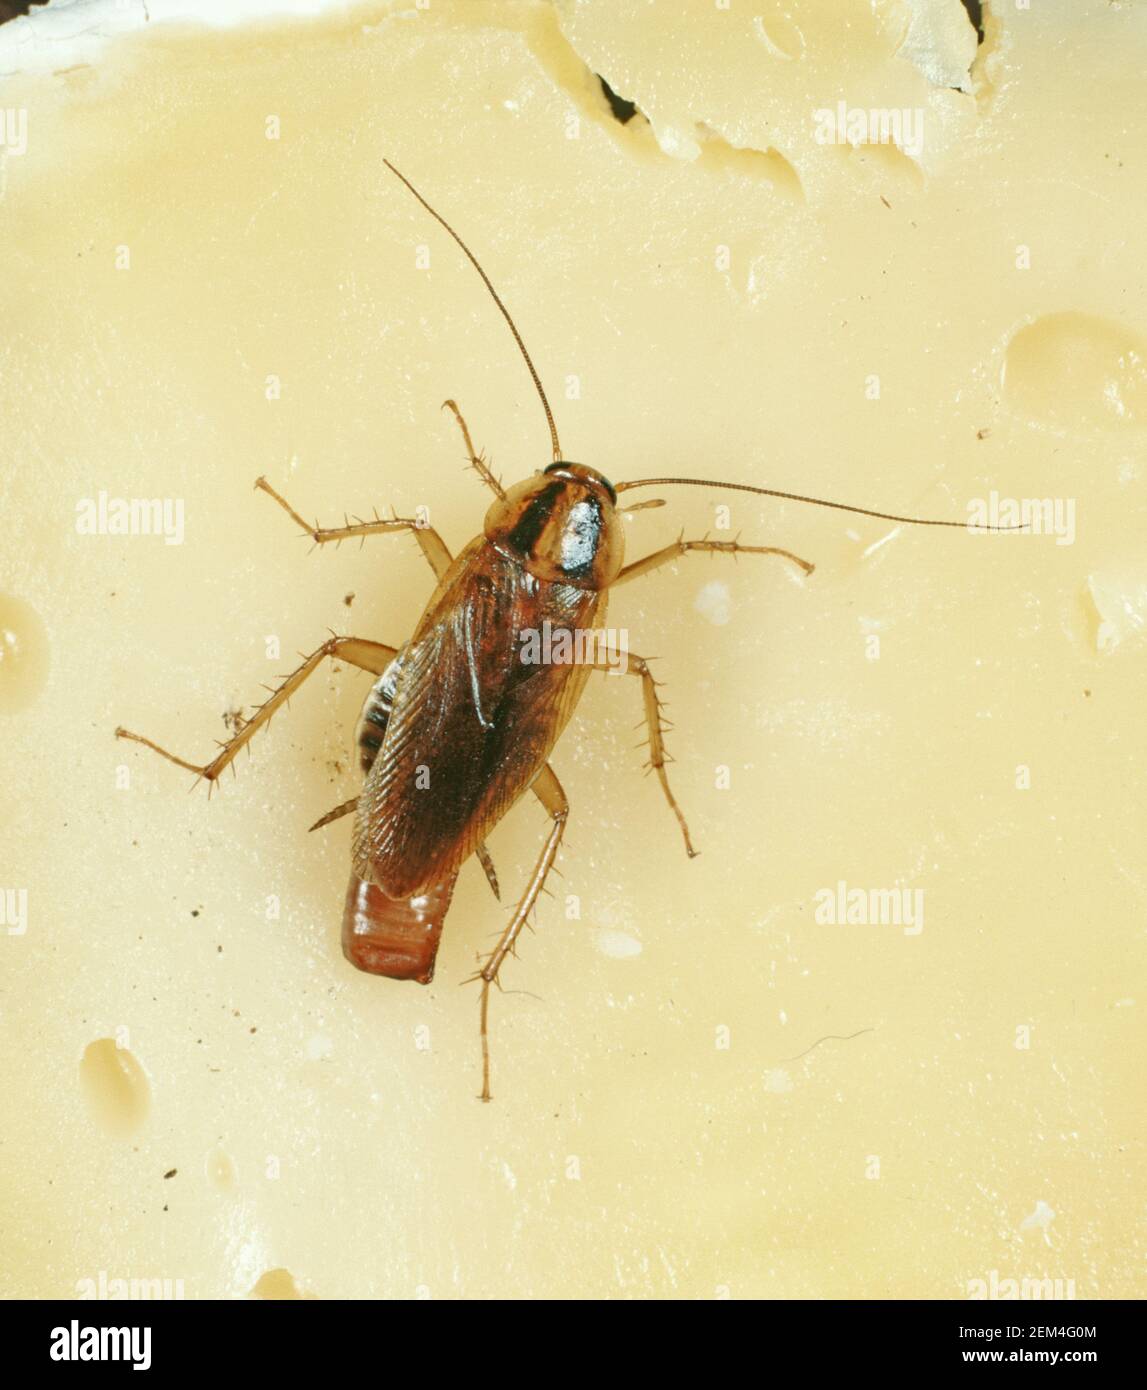 Cucaracha alemana (Blattella germanica) hembra gravida con estuche de huevo (oothecae) salud pública y cocina peste en el queso Foto de stock